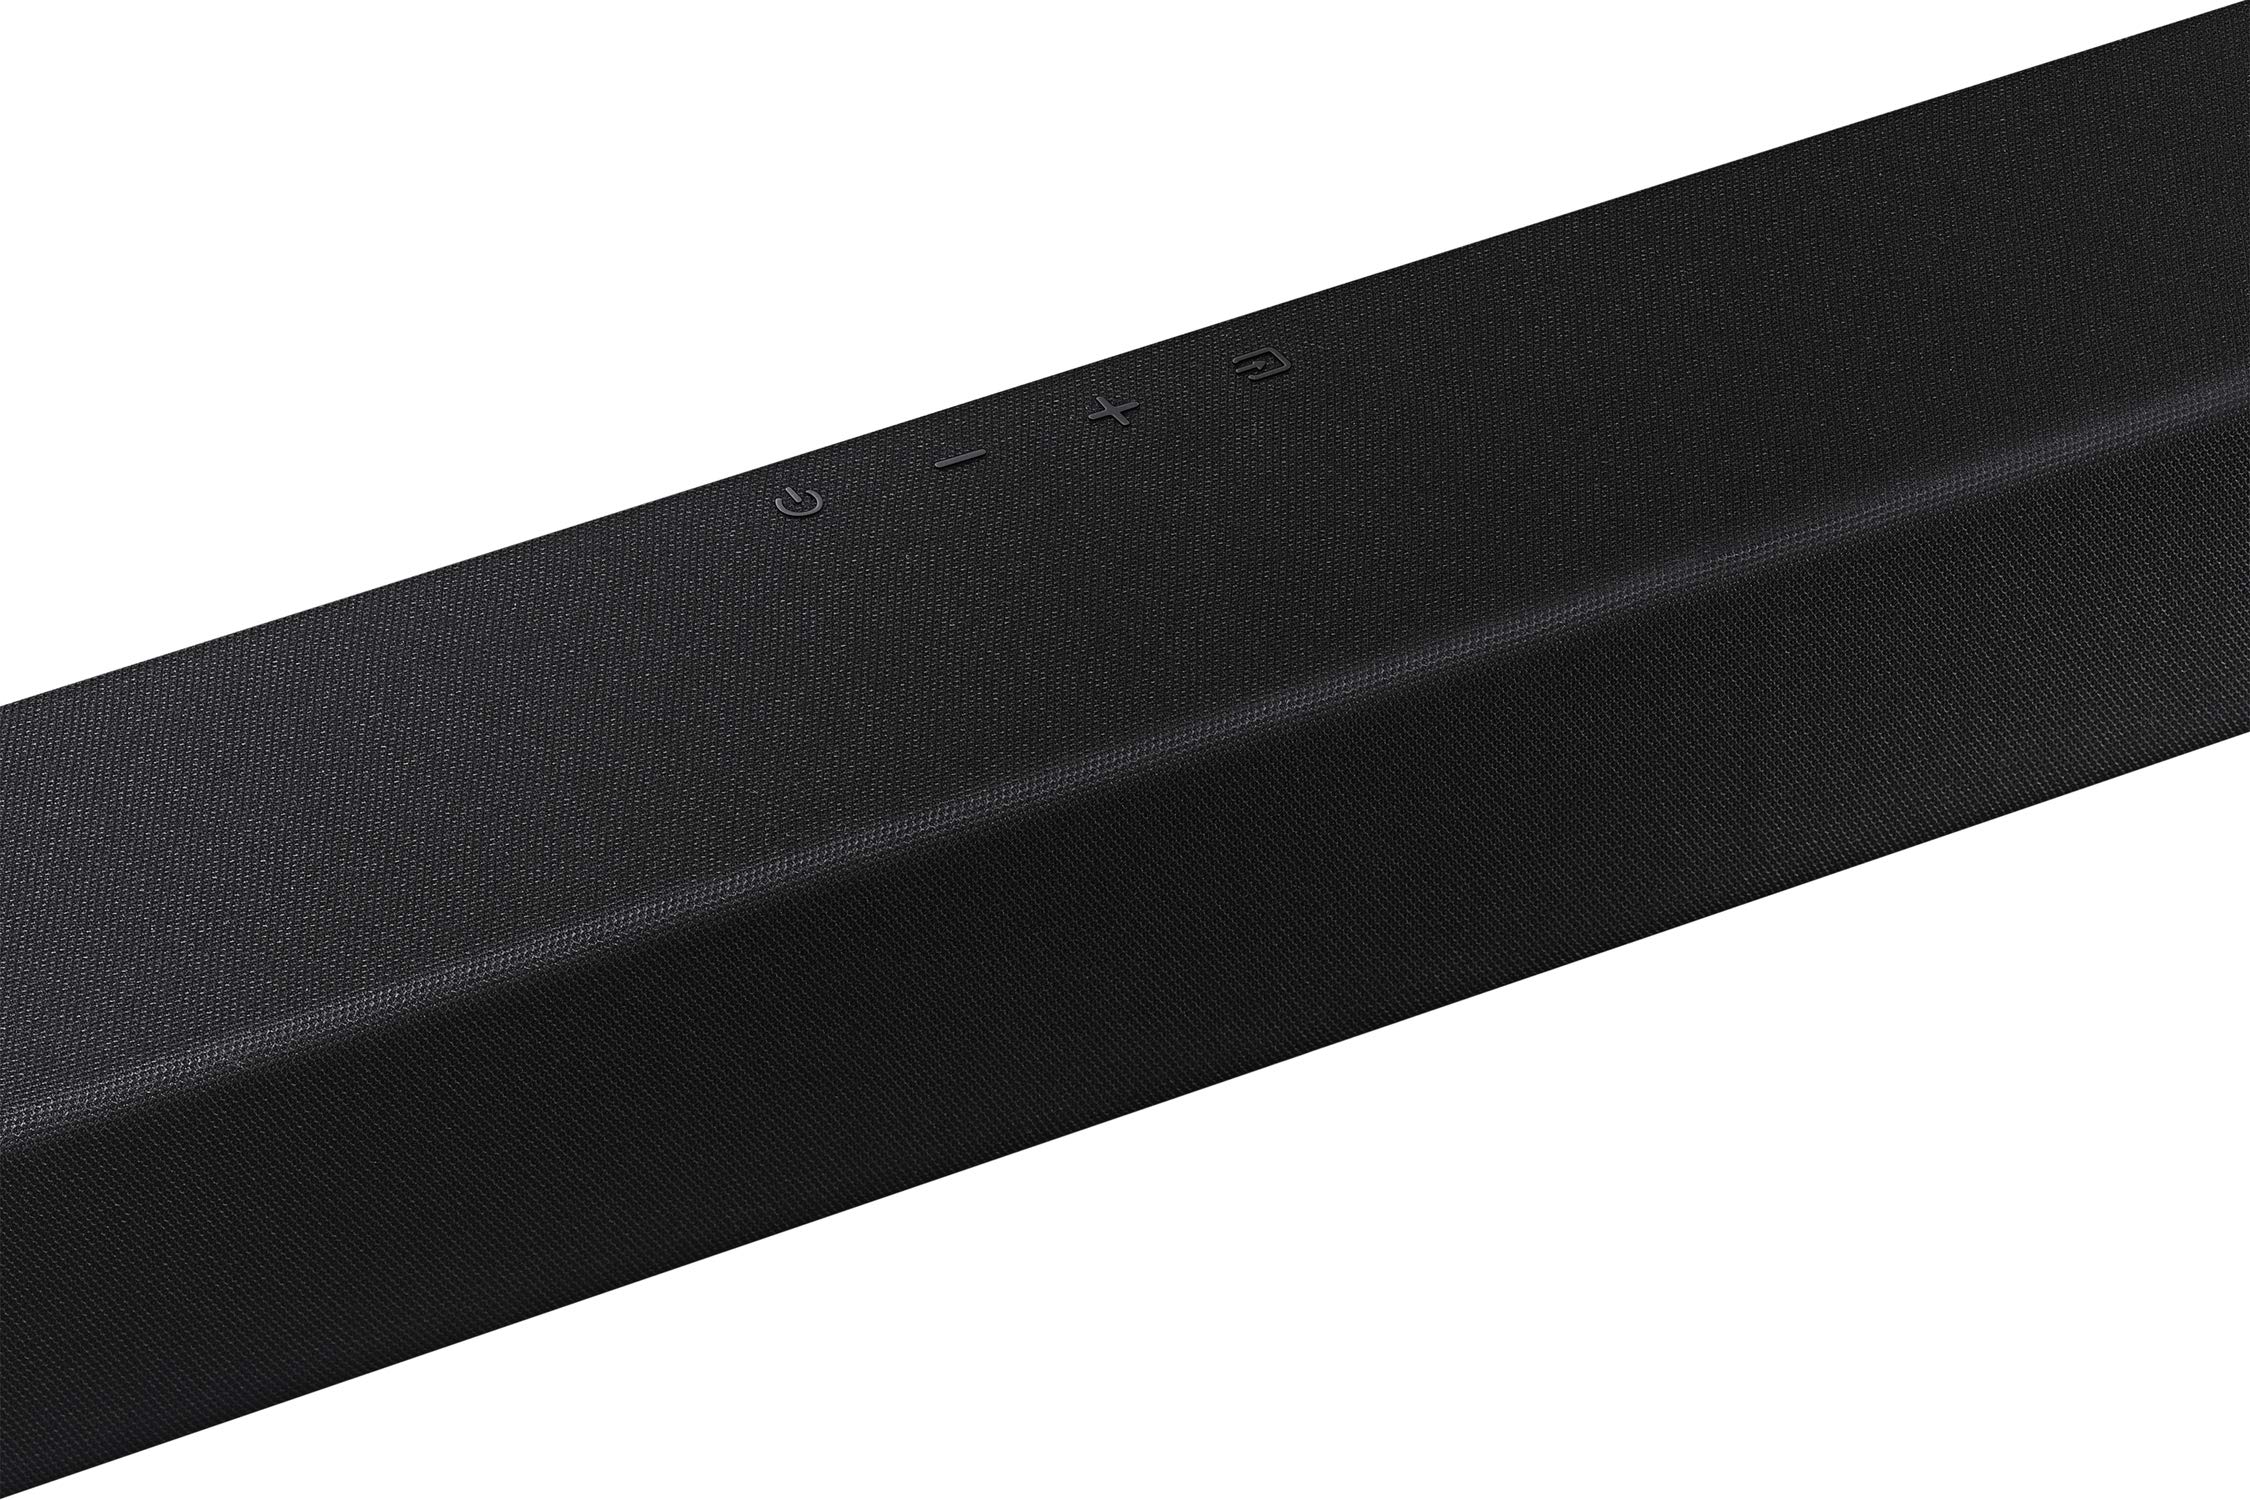 SAMSUNG HW-T450 2.1ch Soundbar with Dolby Audio (2020)